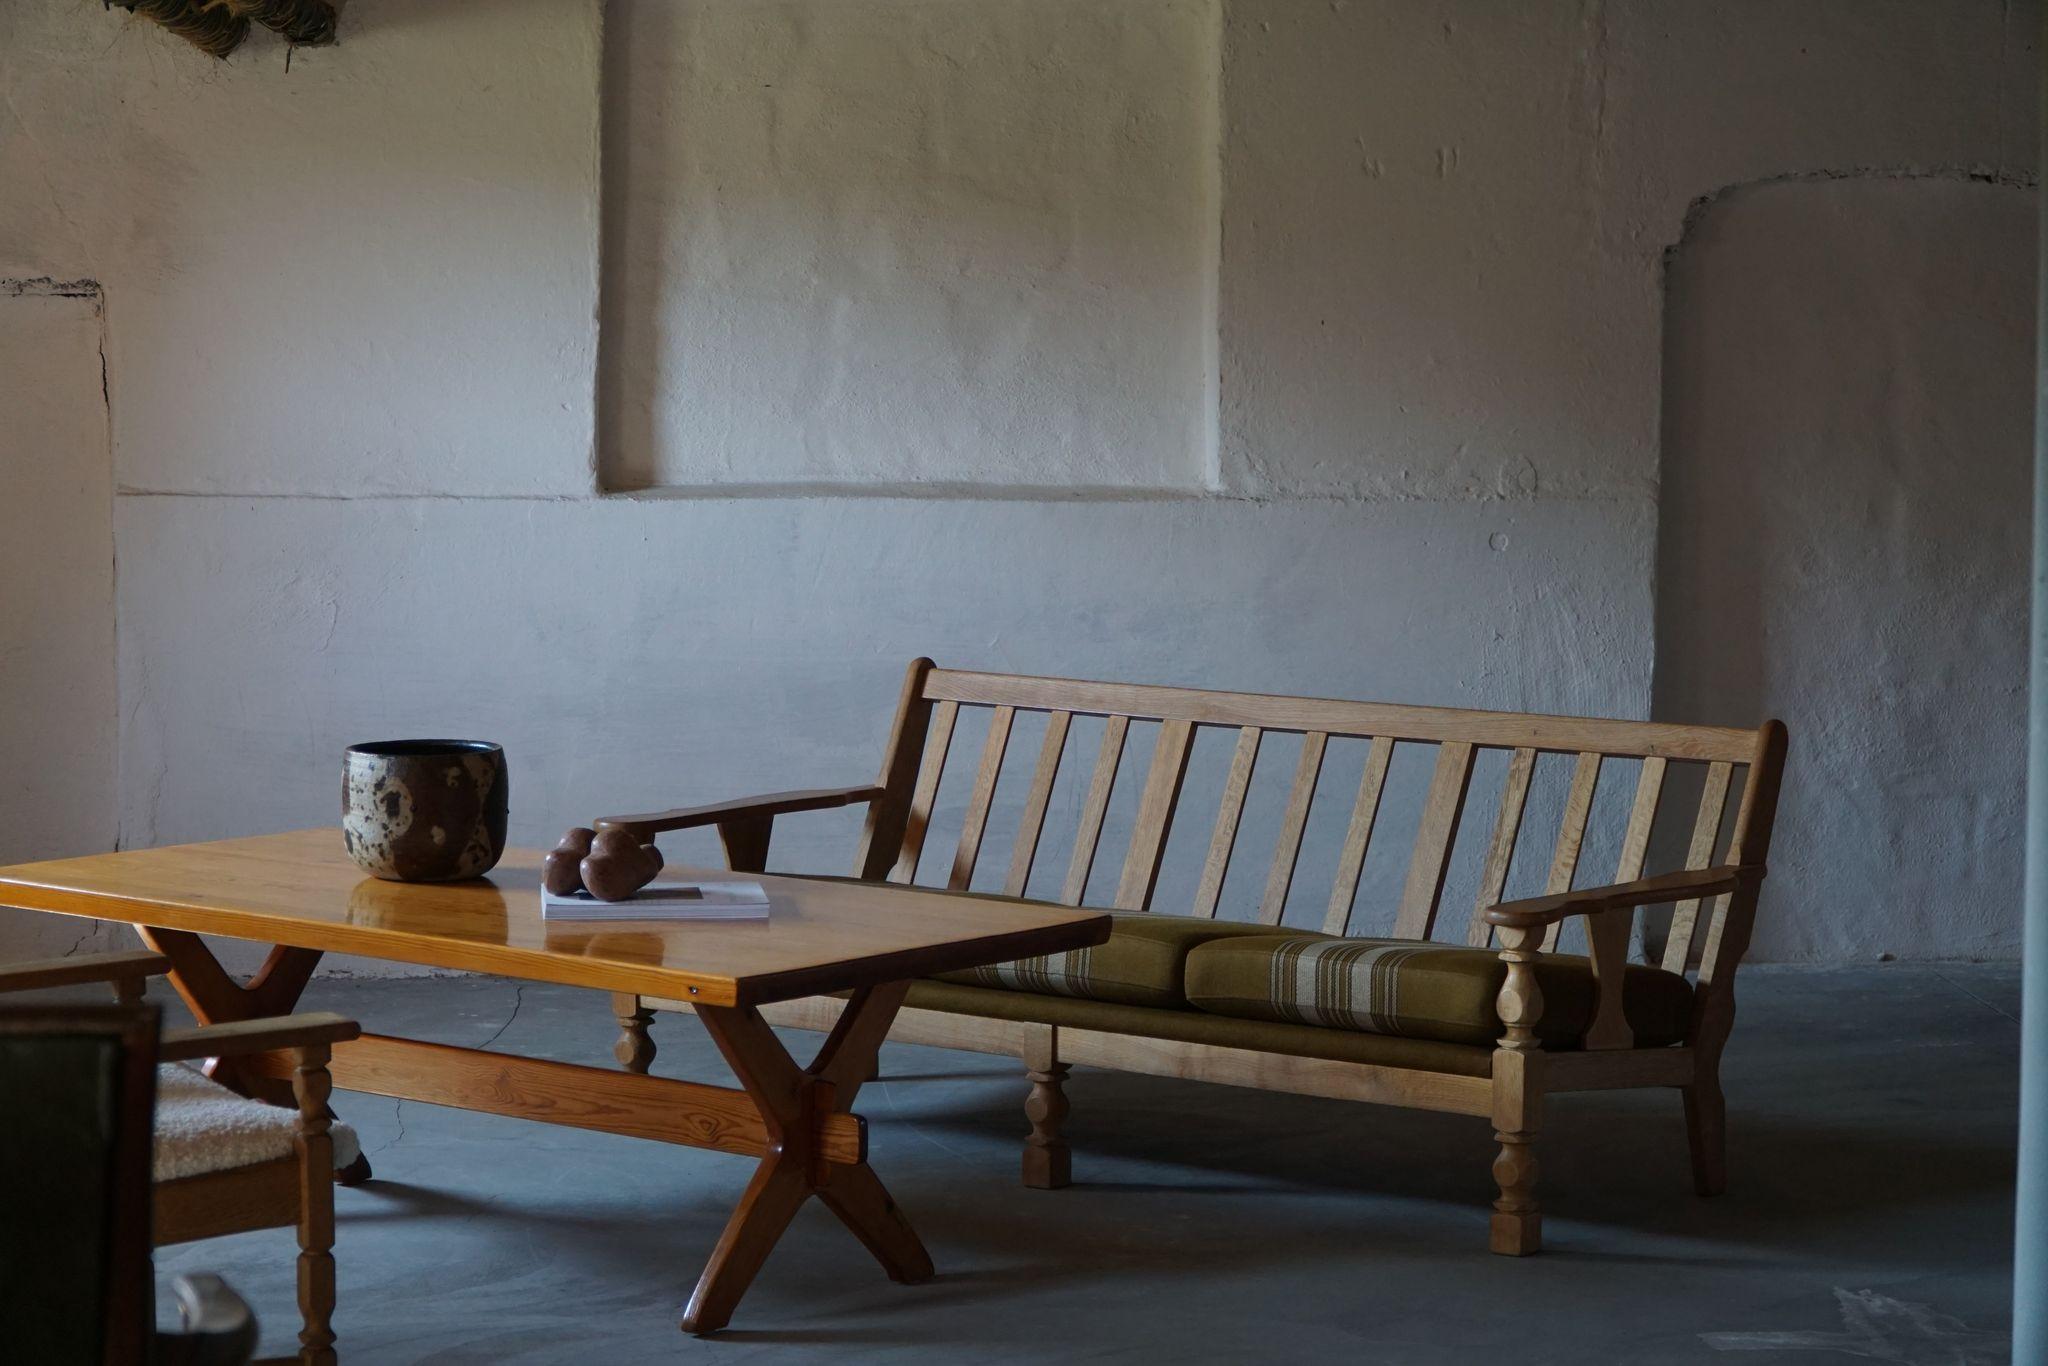 Un rare canapé moderne danois sculptural dans le style de Henning Kjærnulf. Réalisé en chêne et avec sa tapisserie originale en laine de savate. Fabriqué dans les années 1960 par un ébéniste danois.
L'impression générale est bonne. 

Ce joli